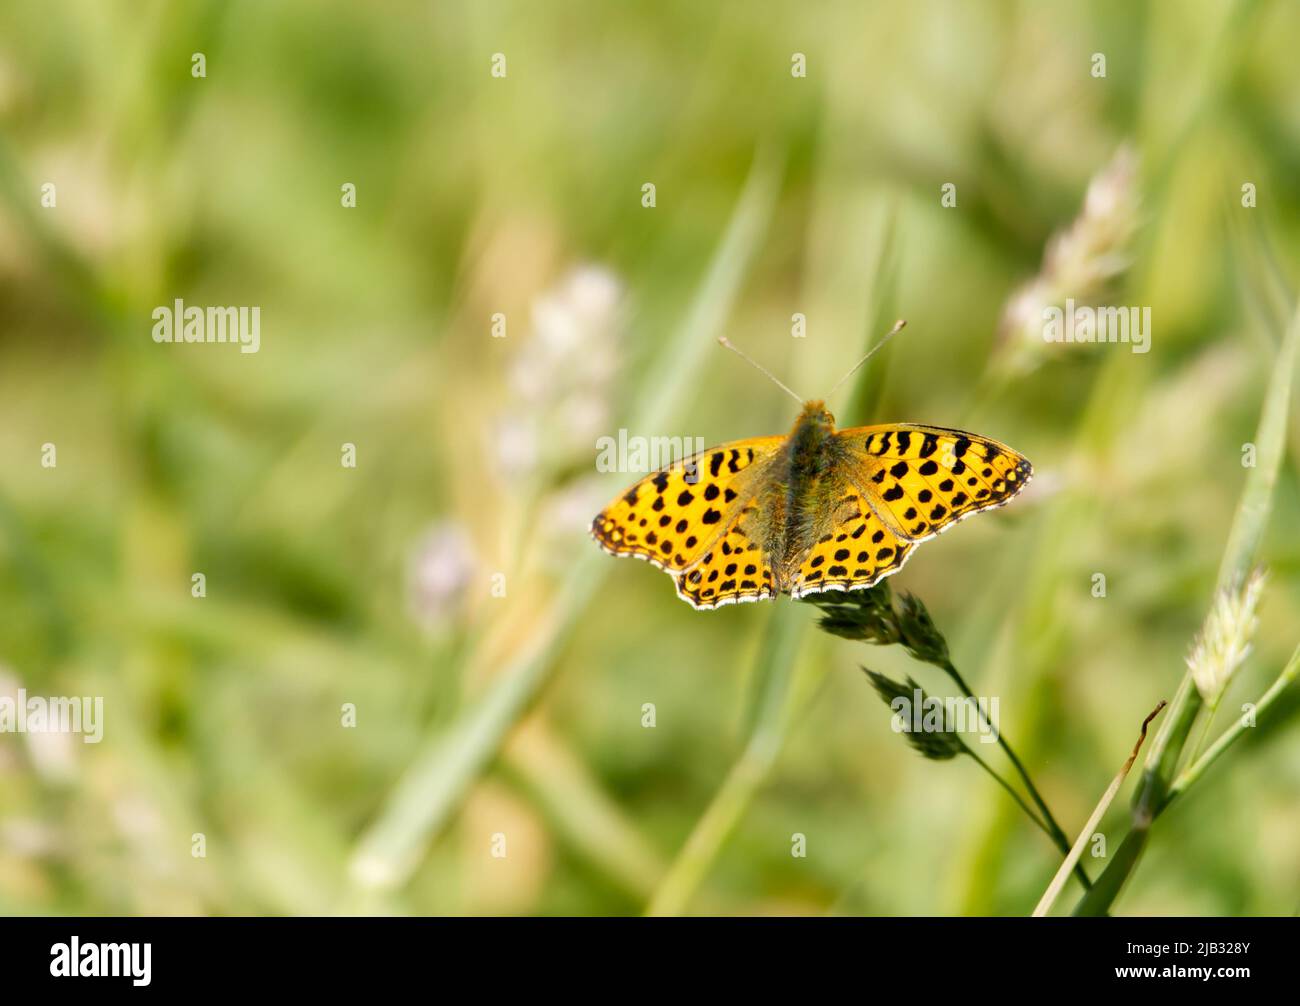 Una Regina di Spagna Fritillary Butterfly (Issoria lathonia) che si diletta sull'erba in un prato nel Limburgo del Sud, Paesi Bassi. Spazio di copia. Foto Stock